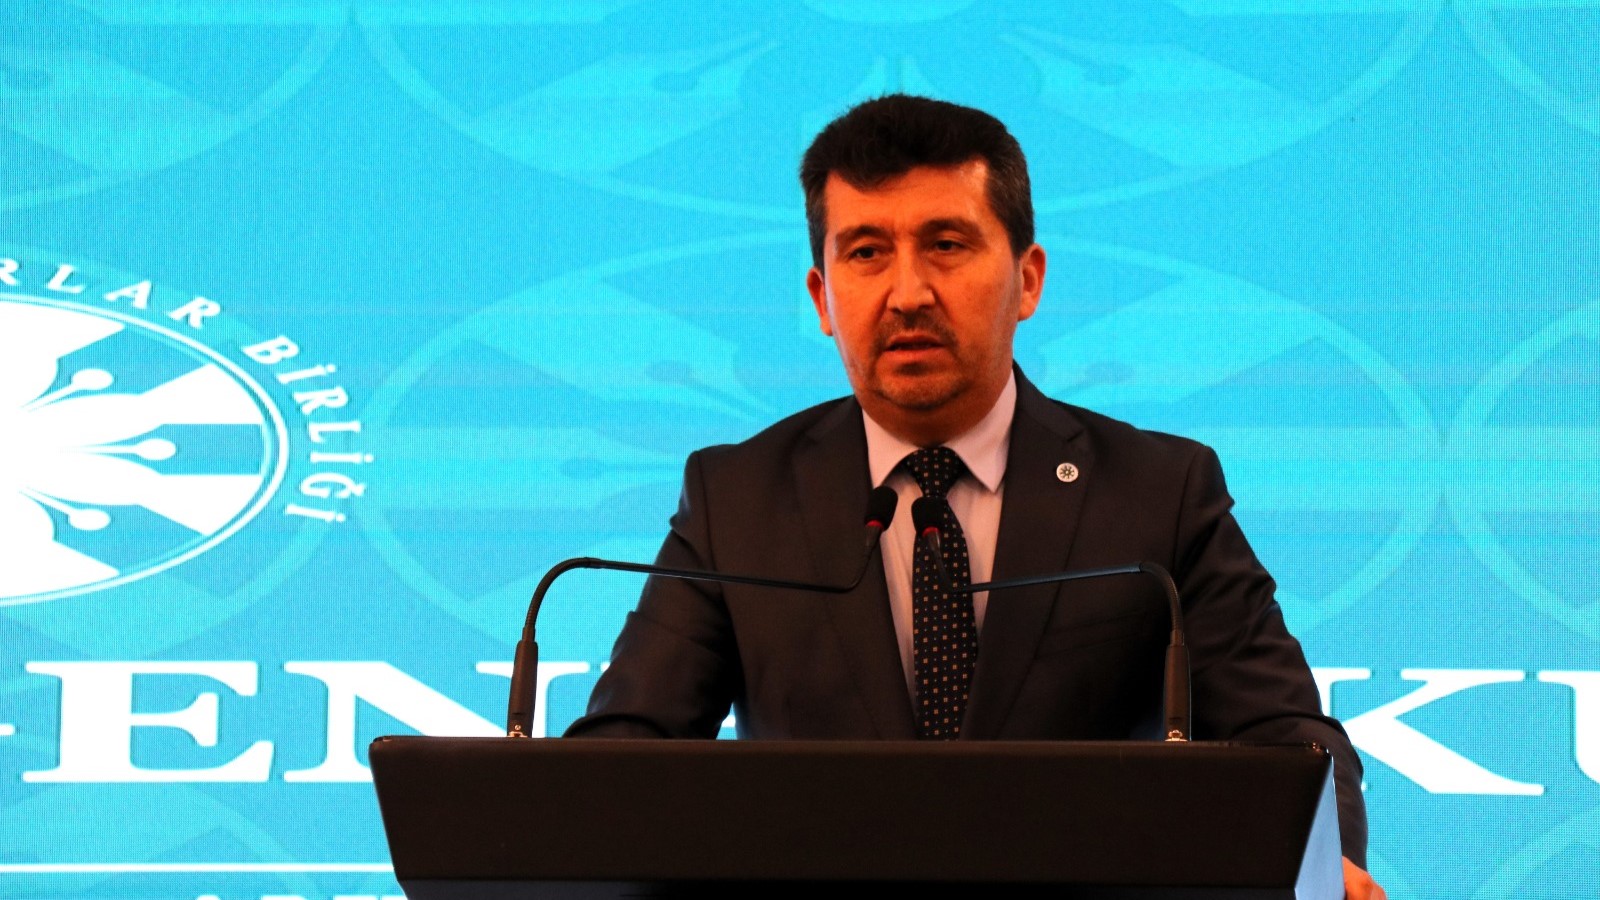 Prof. Dr. Arıcan yeniden TYB Genel Başkanı seçildi